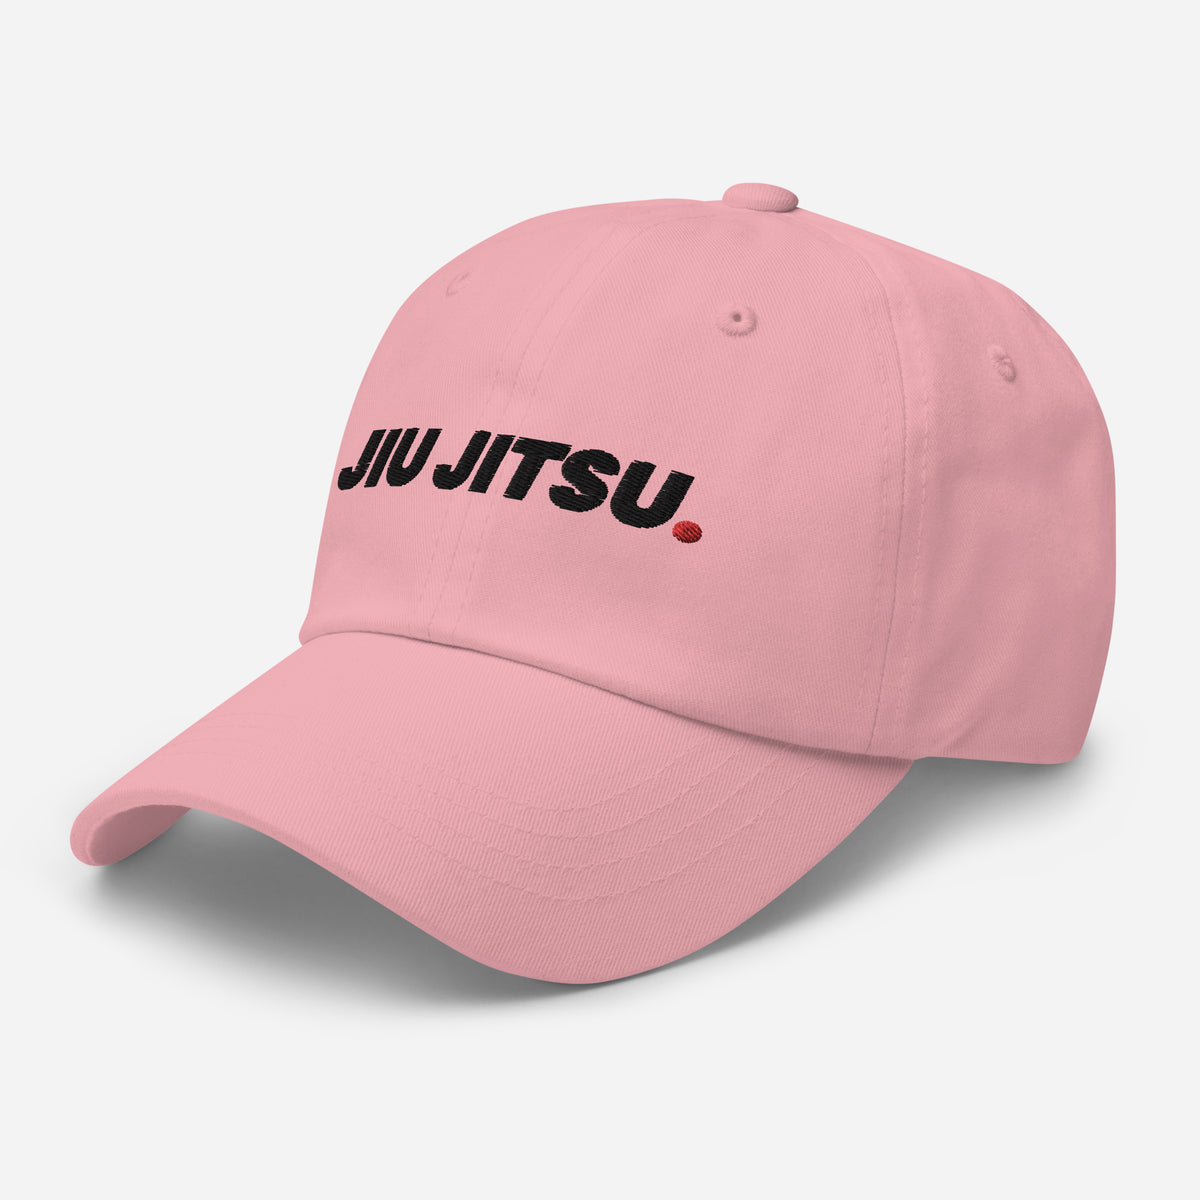 Jiu Jitsu Dot Text Classic Dad Hat